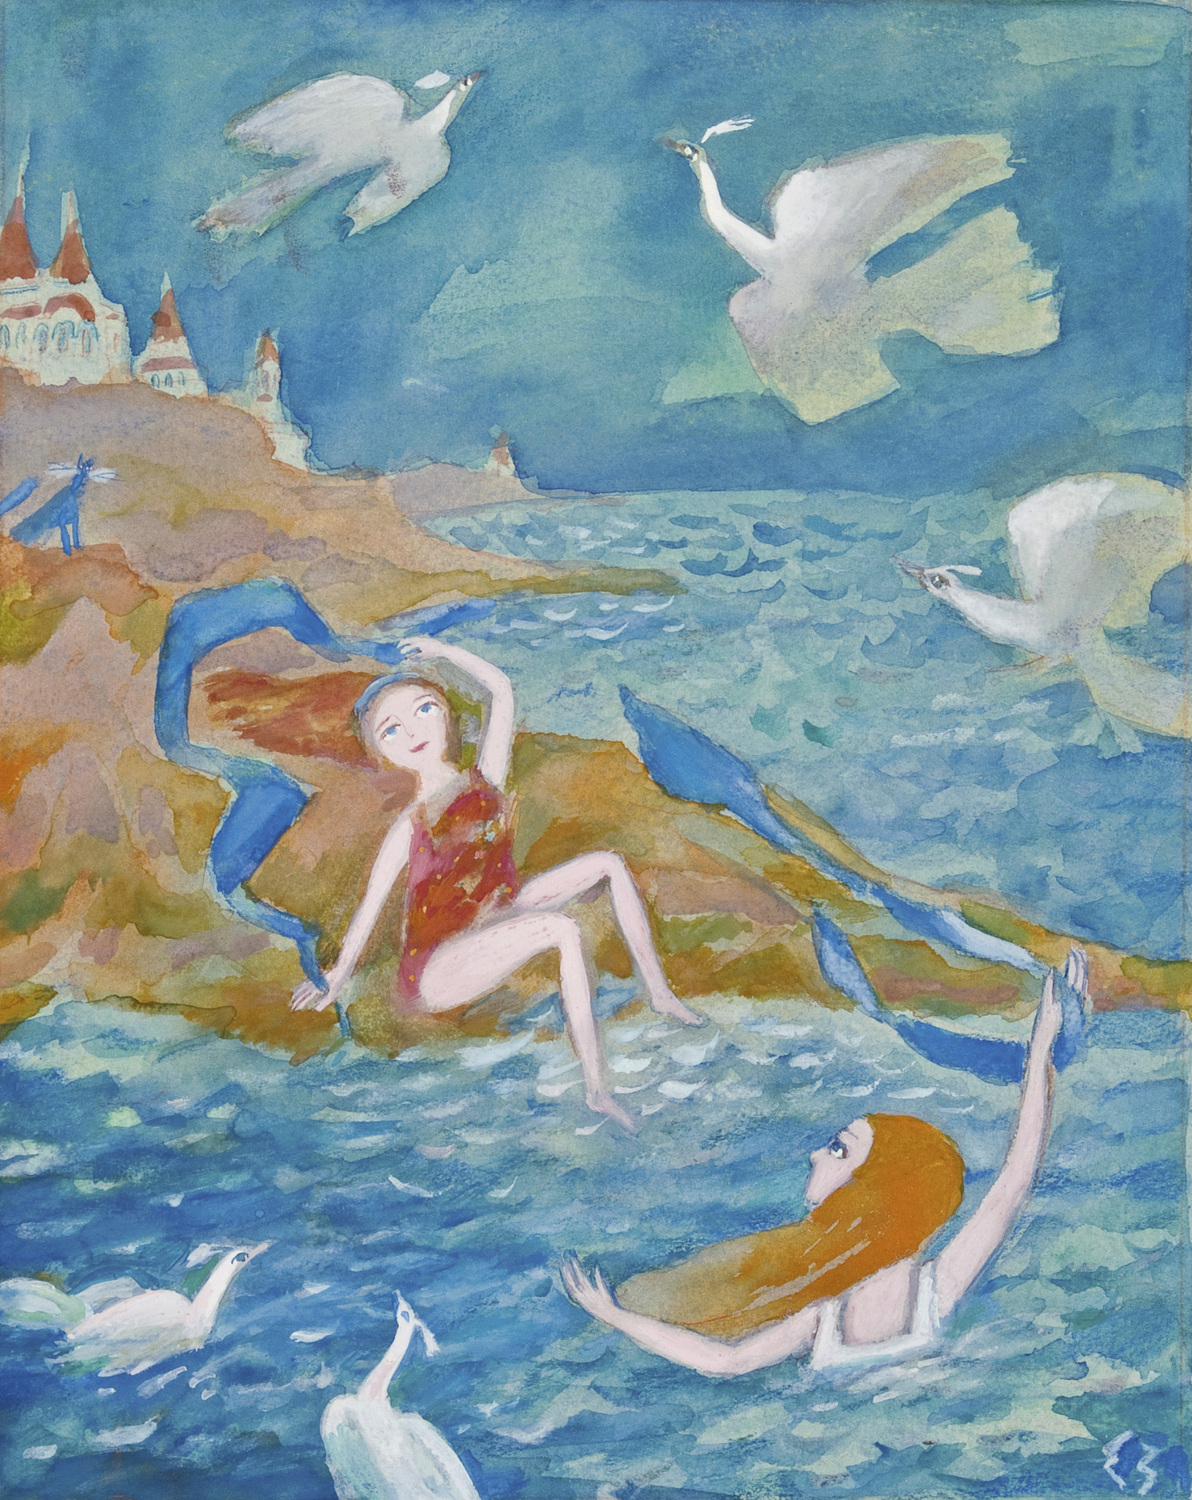    Мир сказки Елены Зарубовой | Белые птицы над берегом